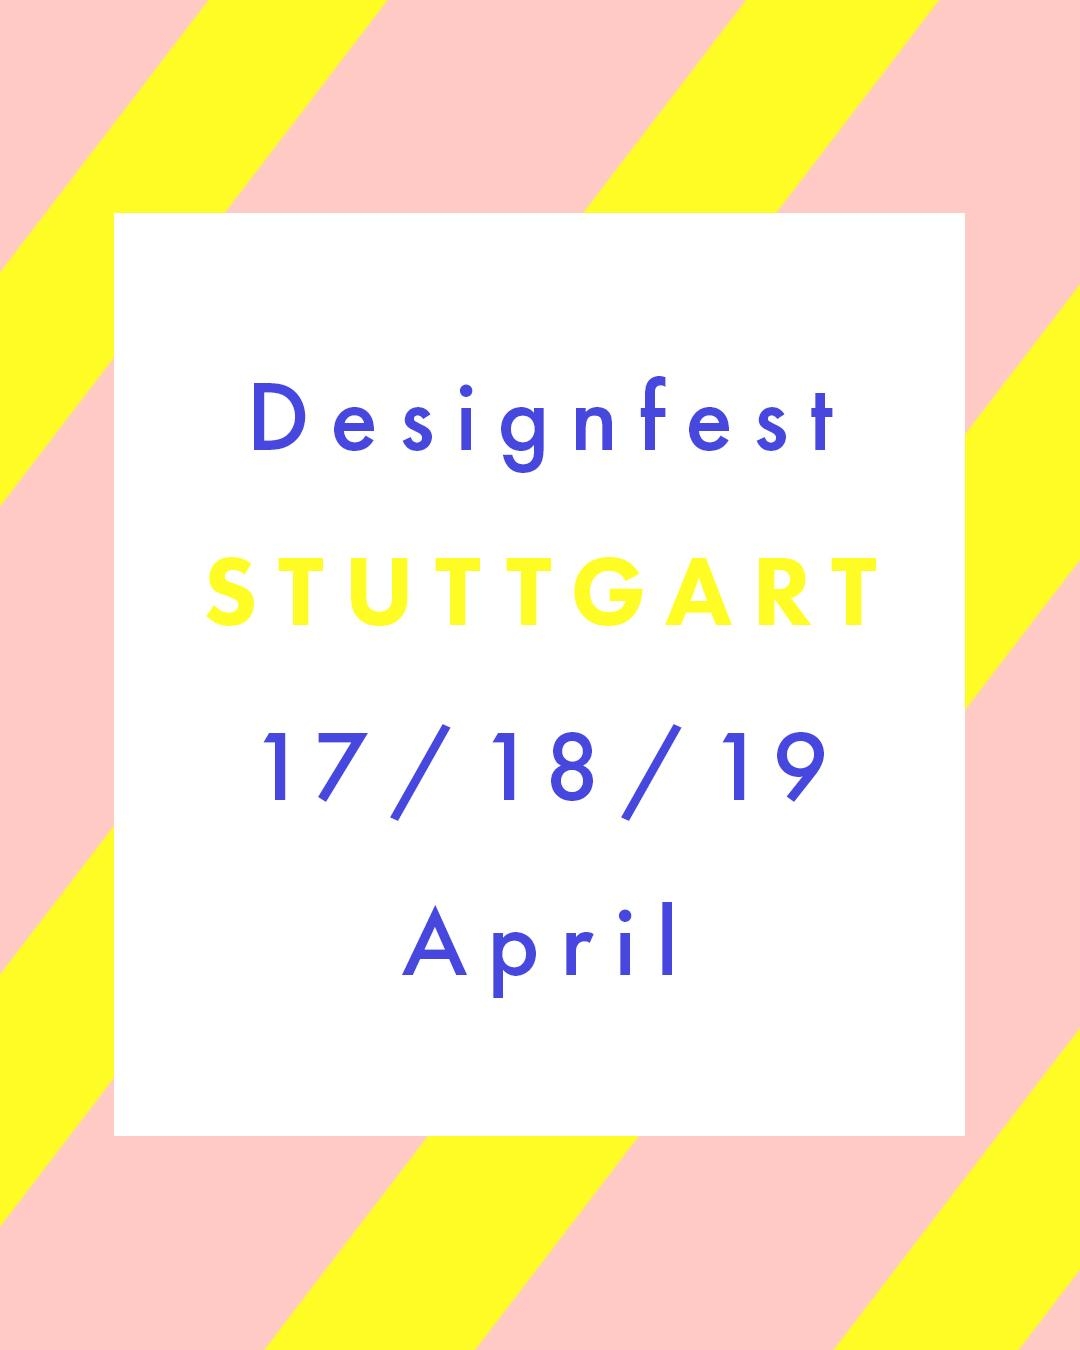 Und last but not least feiern wir im Süden in Stuttgart 💥 #designfest #stuttgart